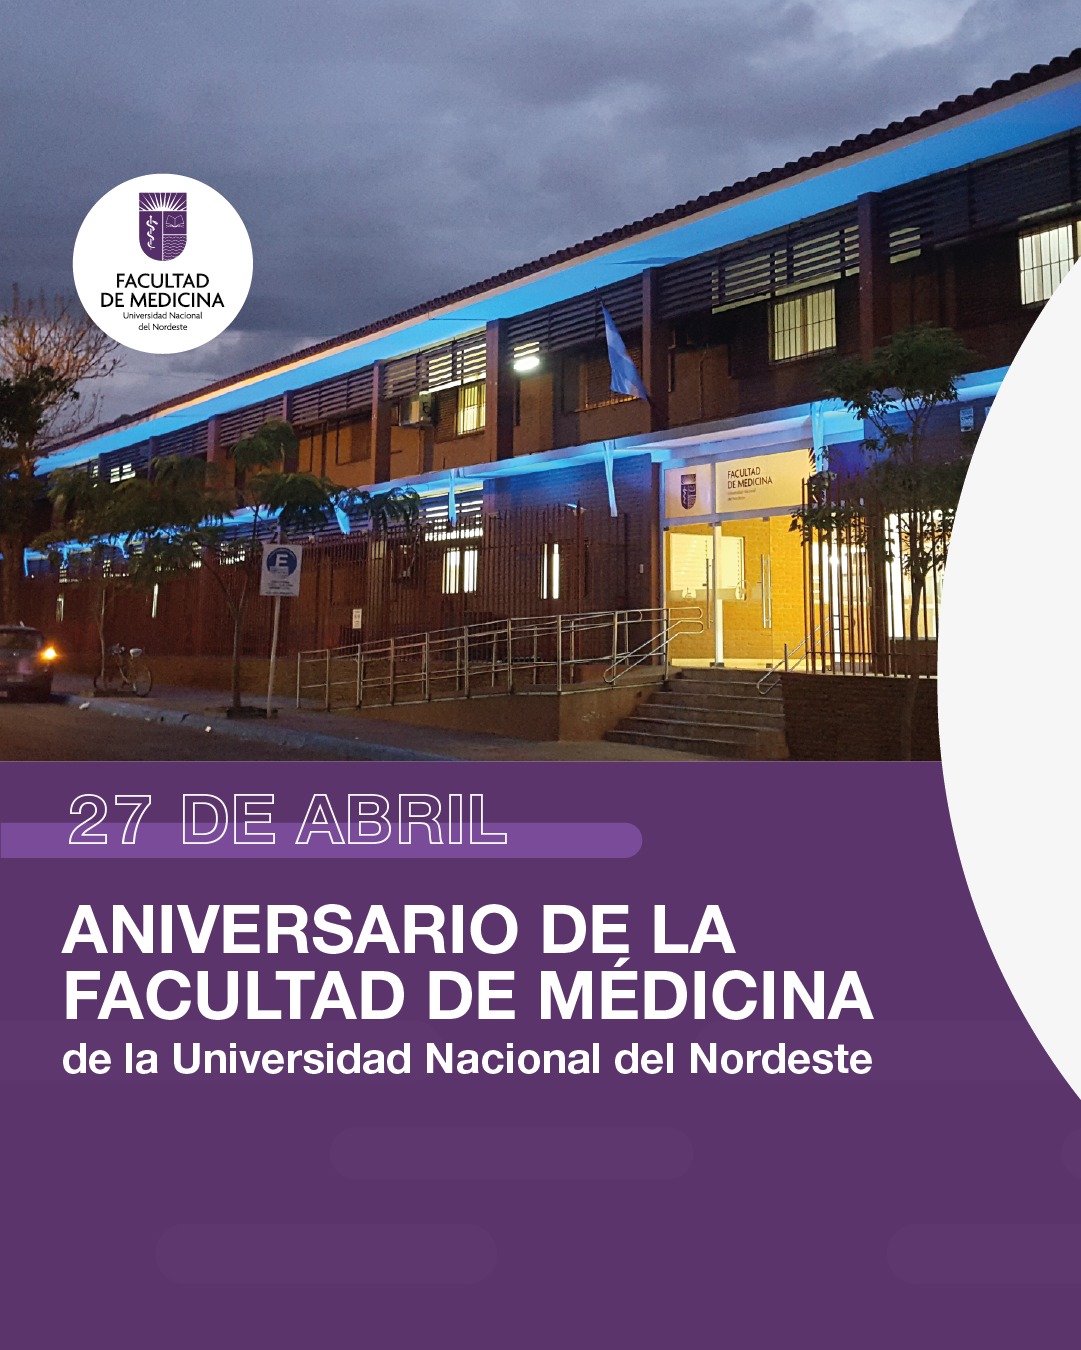 La Facultad de Medicina de la UNNE celebra su 71° aniversario como referente académico de excelencia